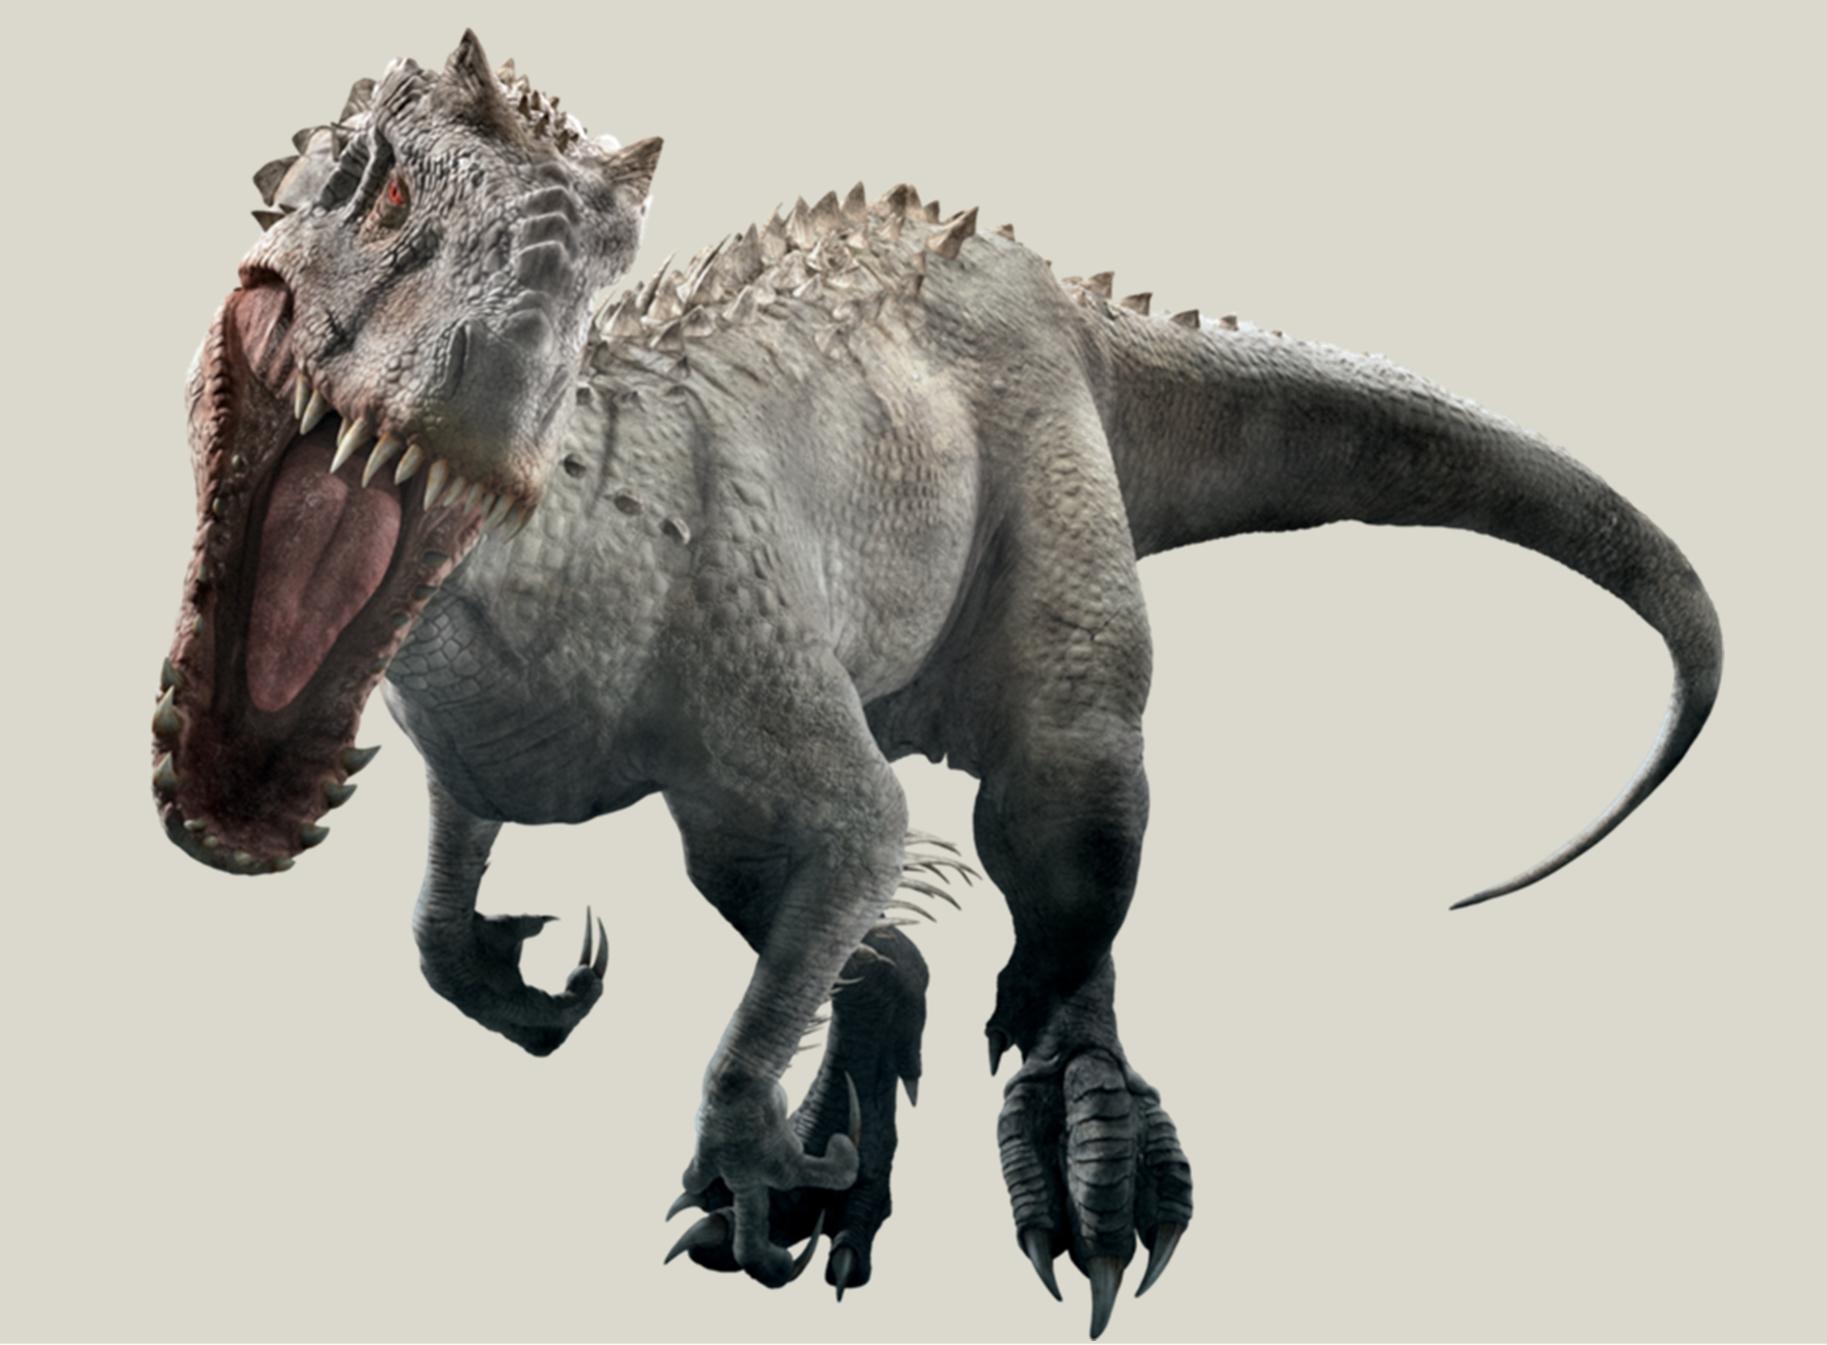 并且其一直都被称为史上最大的食肉恐龙,不过古生物学家研究发现它